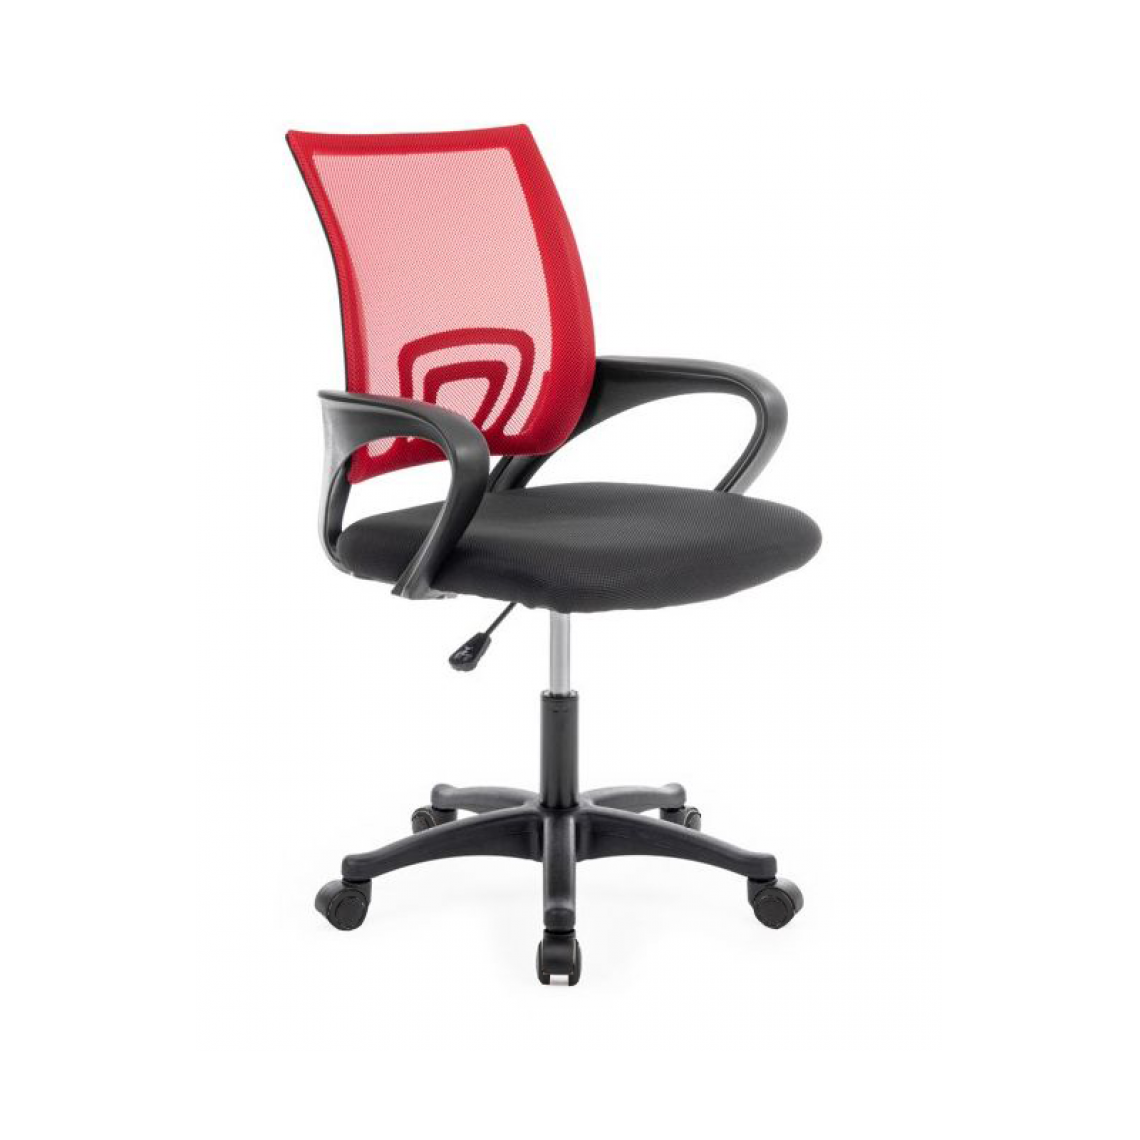 Hucoco - CARISE - Fauteuil de bureau ergonomique - Hauteur ajustable - Avec accoudoirs - Chaise de bureau pivotante - Rouge - Chaises